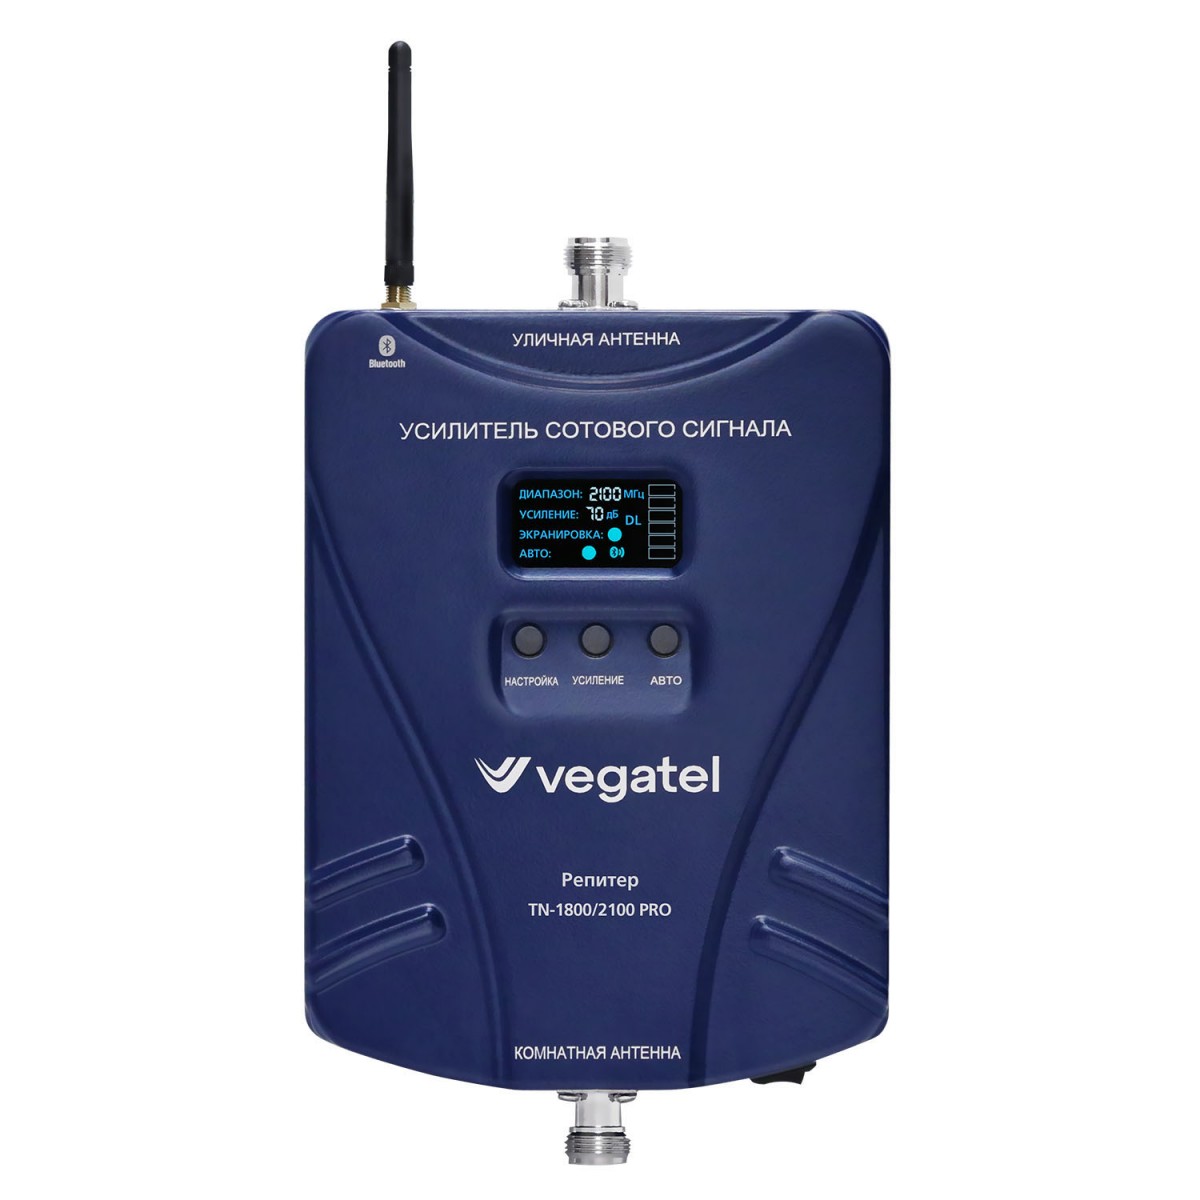 Детальное изображение товара "Комплект усиления сотовой связи Vegatel TN-1800/2100 PRO (14Y)" из каталога оборудования Антенна76